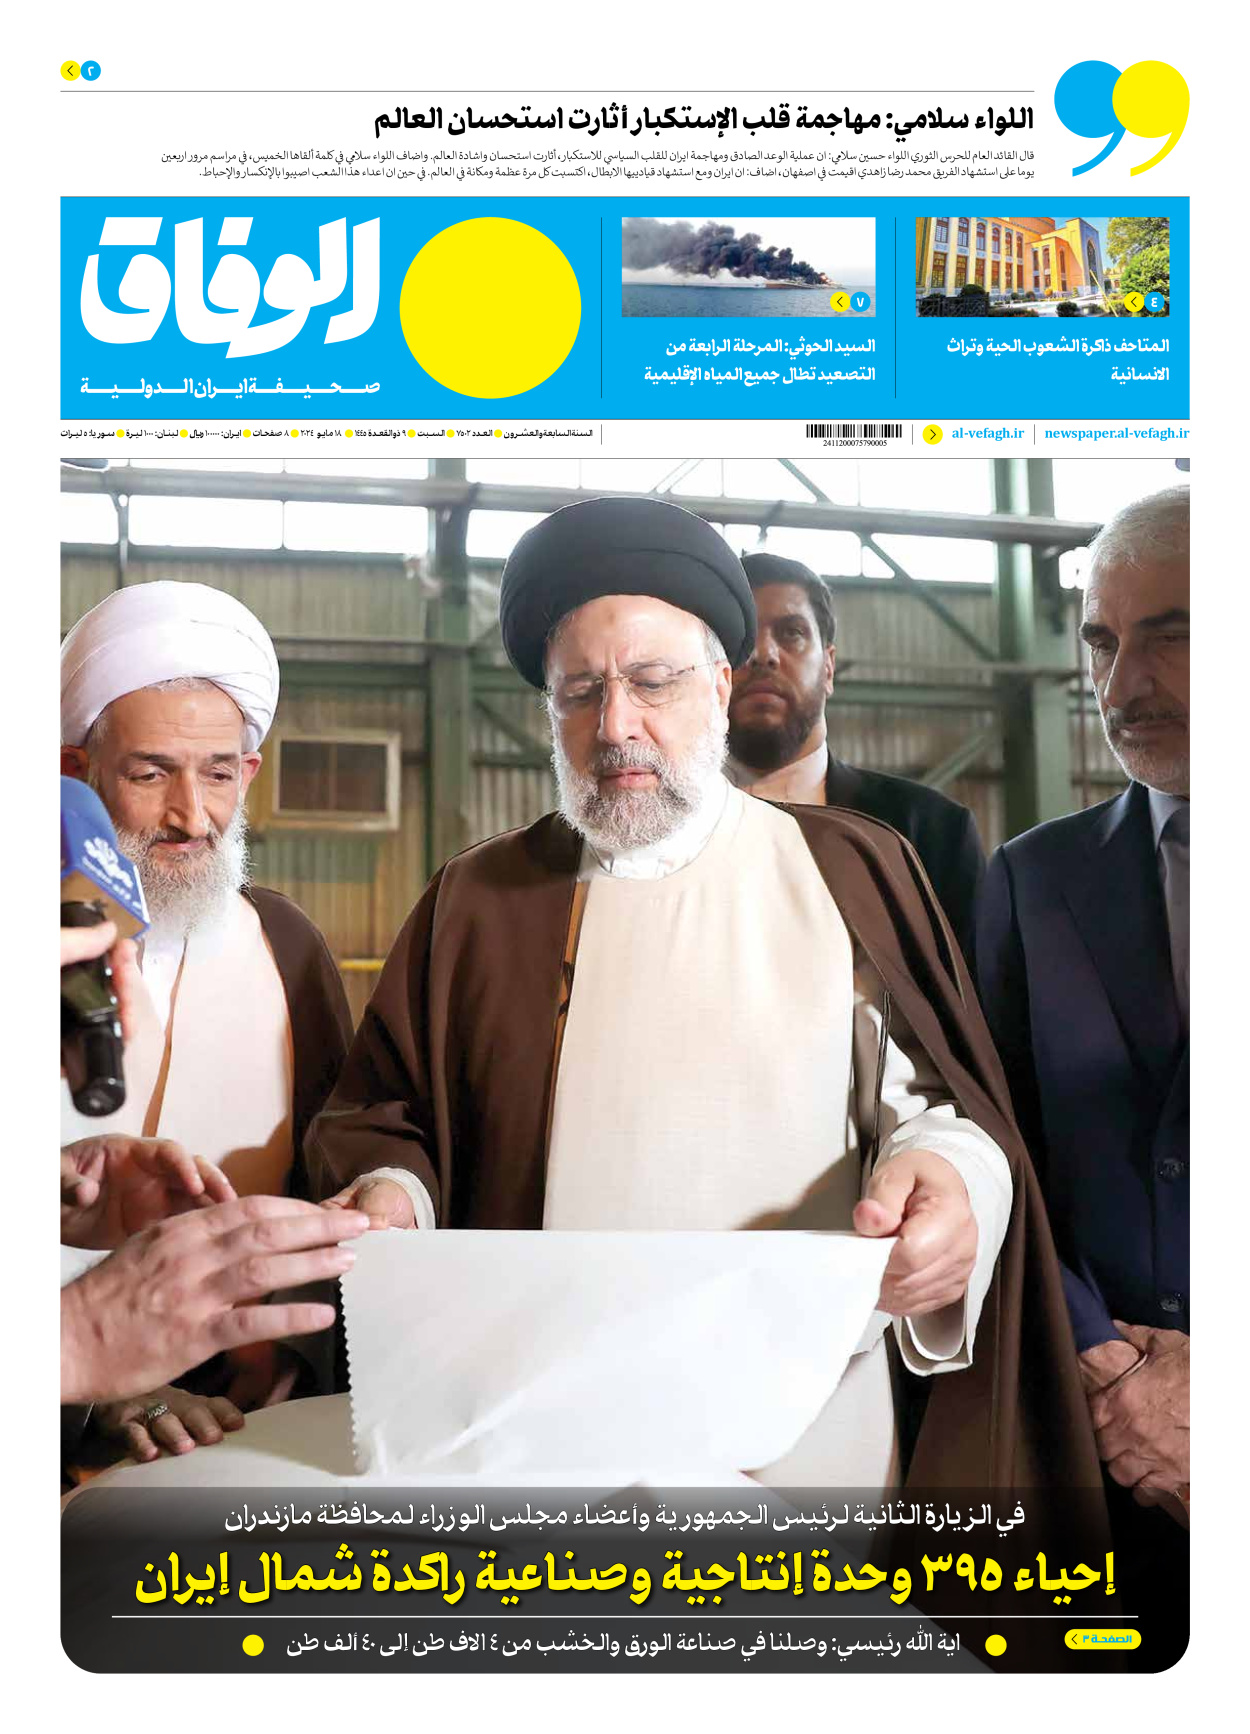 صحیفة ایران الدولیة الوفاق - العدد سبعة آلاف وخمسمائة واثنان - ١٨ مايو ٢٠٢٤ - الصفحة ۱